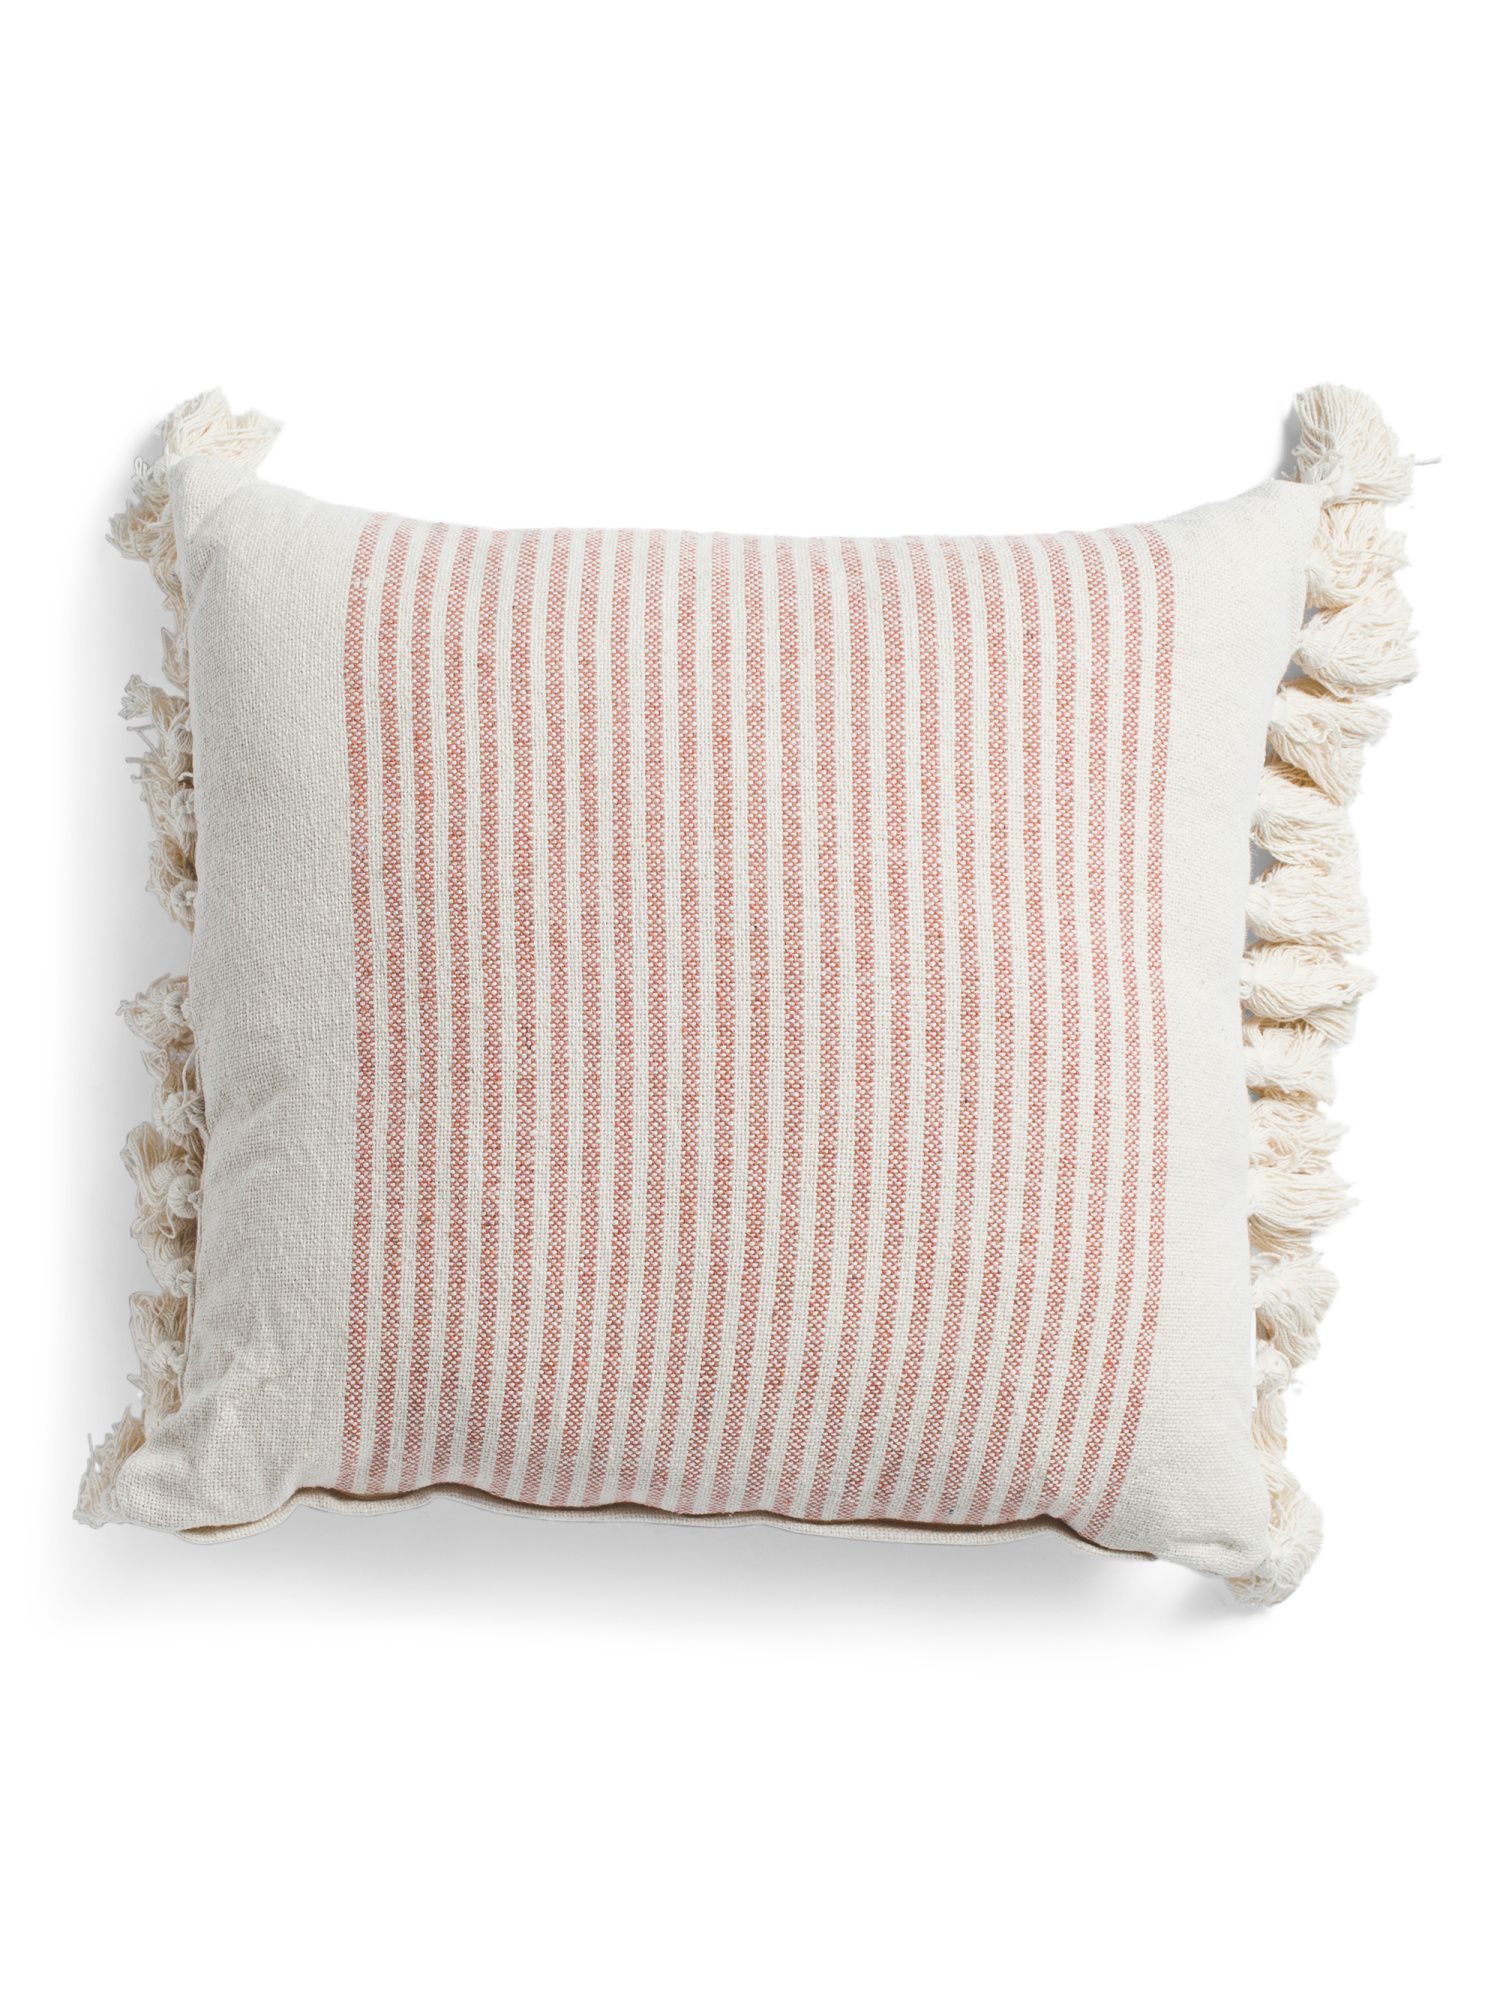 20x20 Textured Stripe Pillow | TJ Maxx